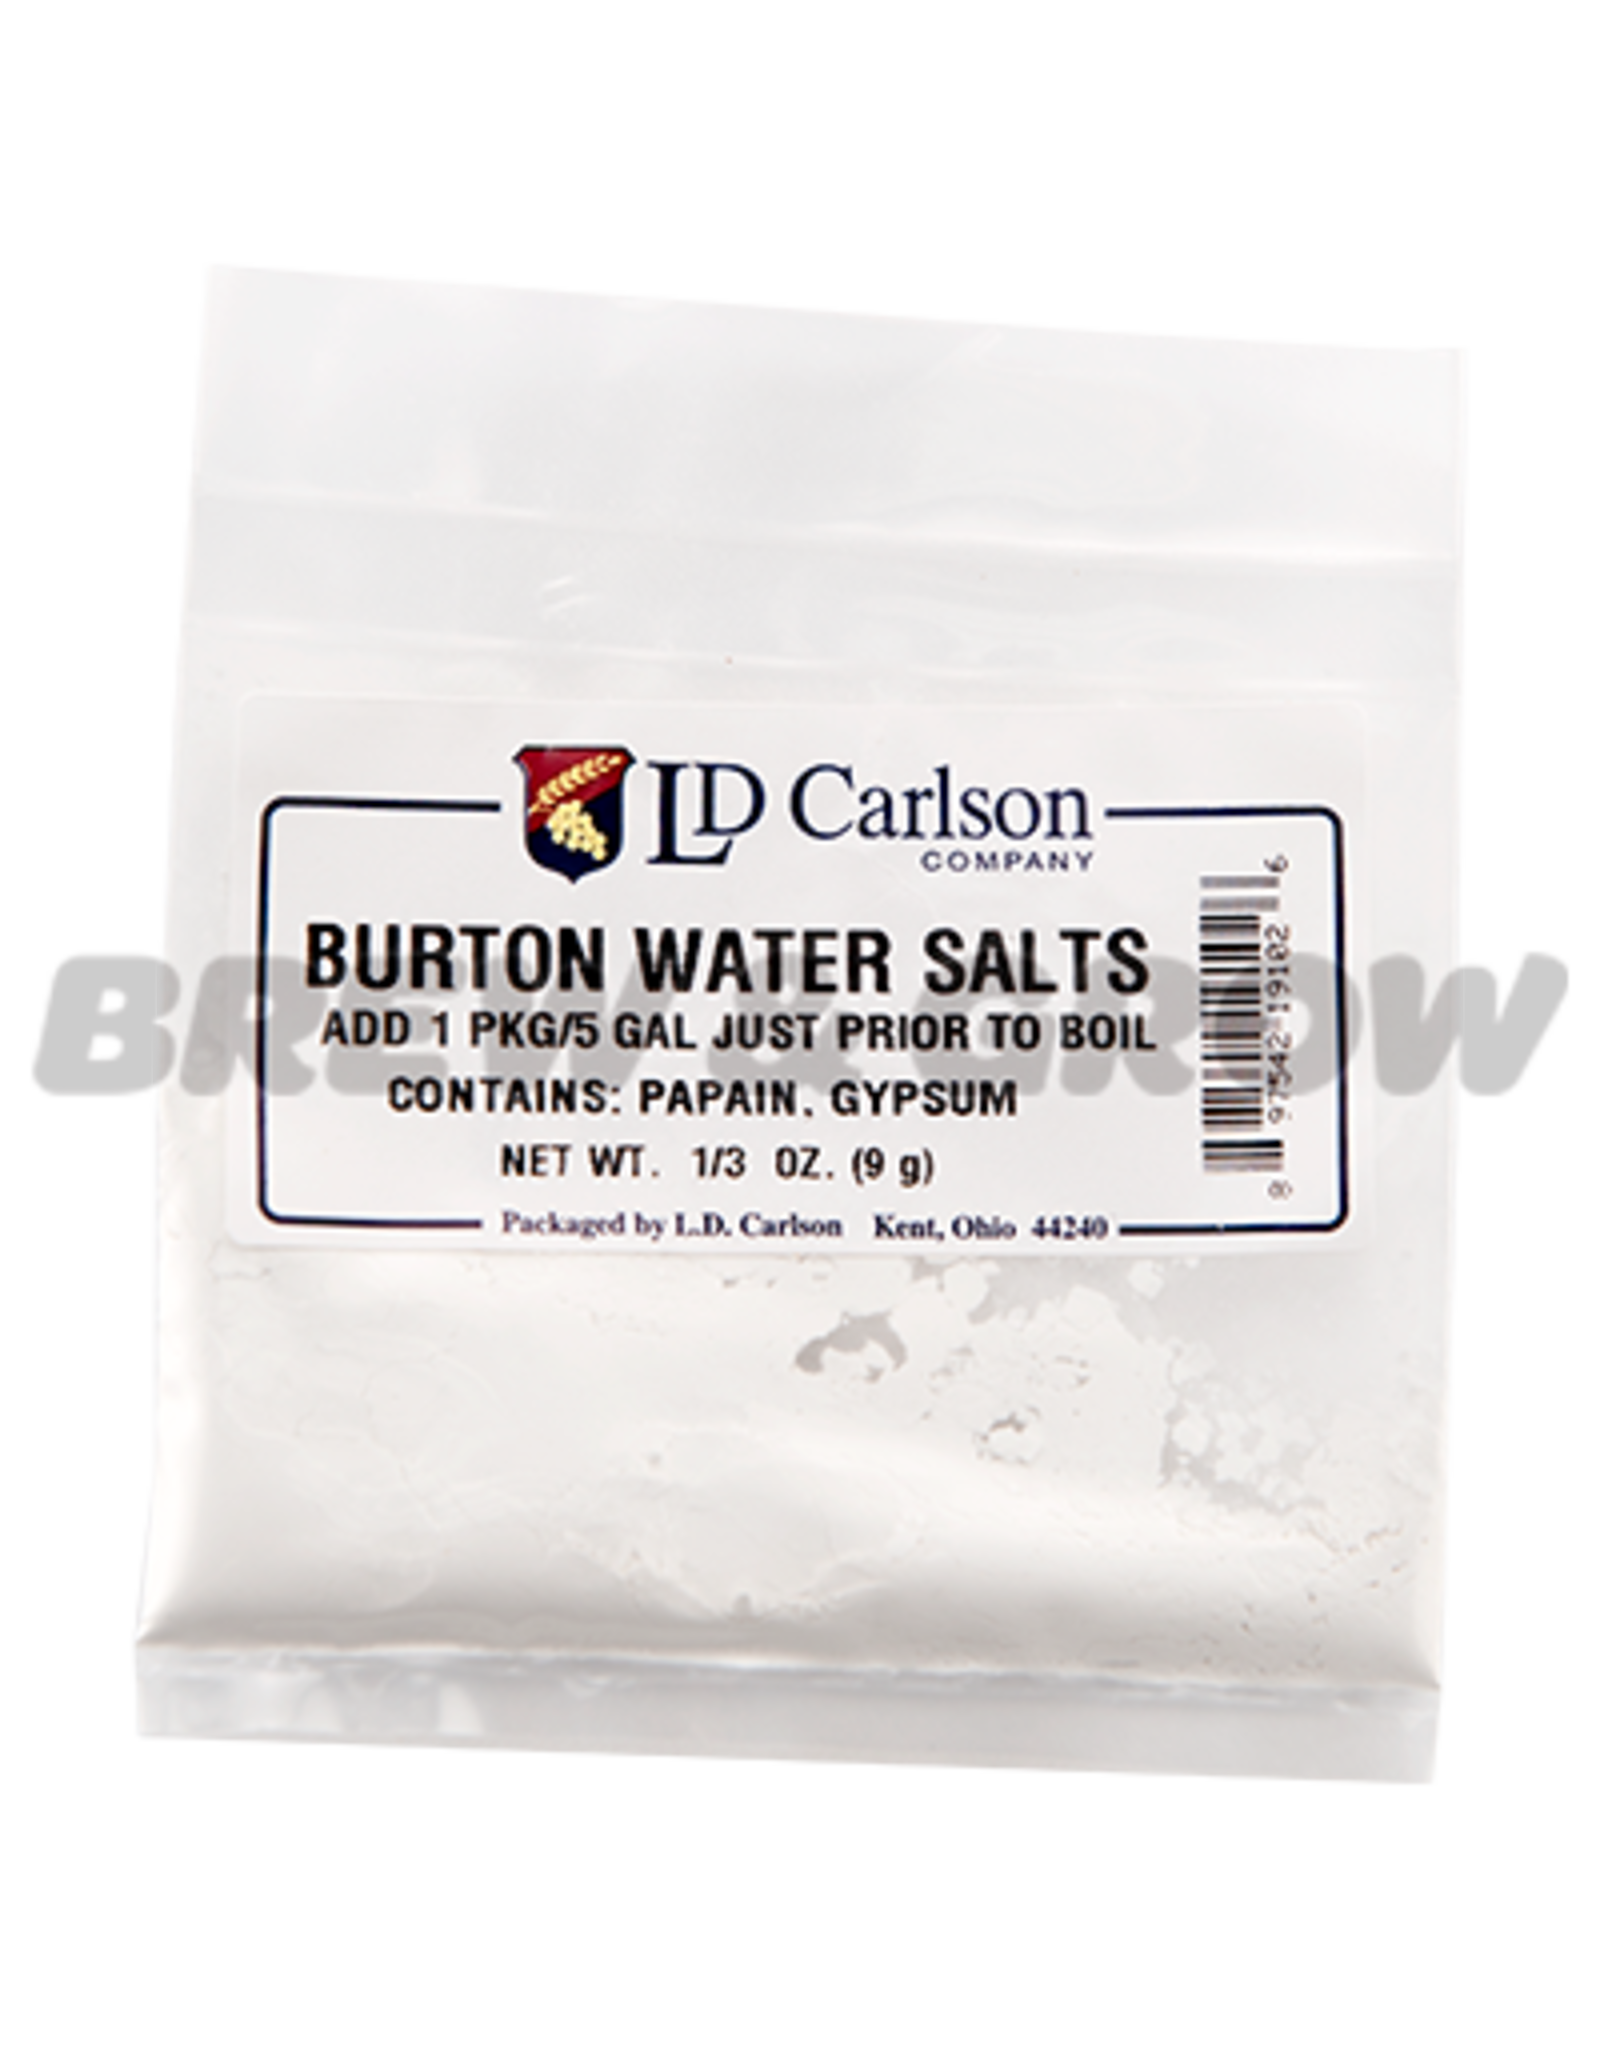 Burton Water Salts 1/3 oz